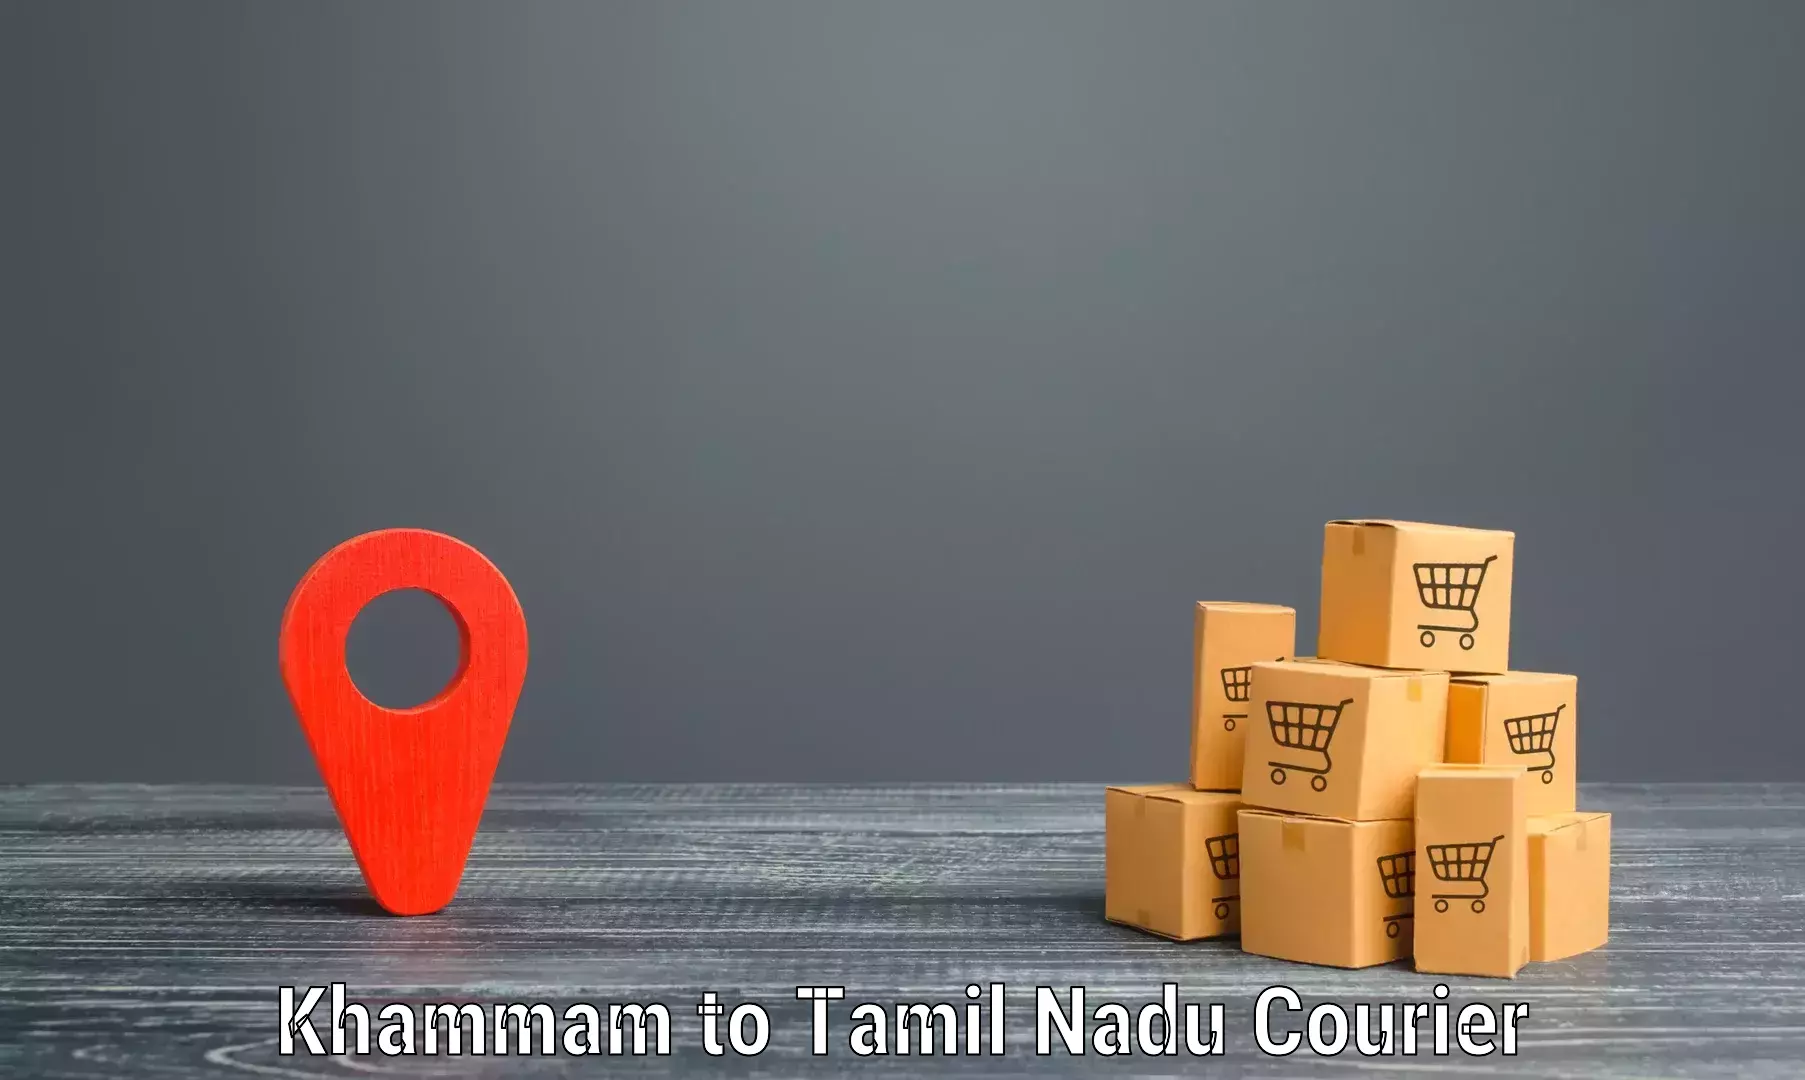 Modern delivery technologies in Khammam to Kanchipuram